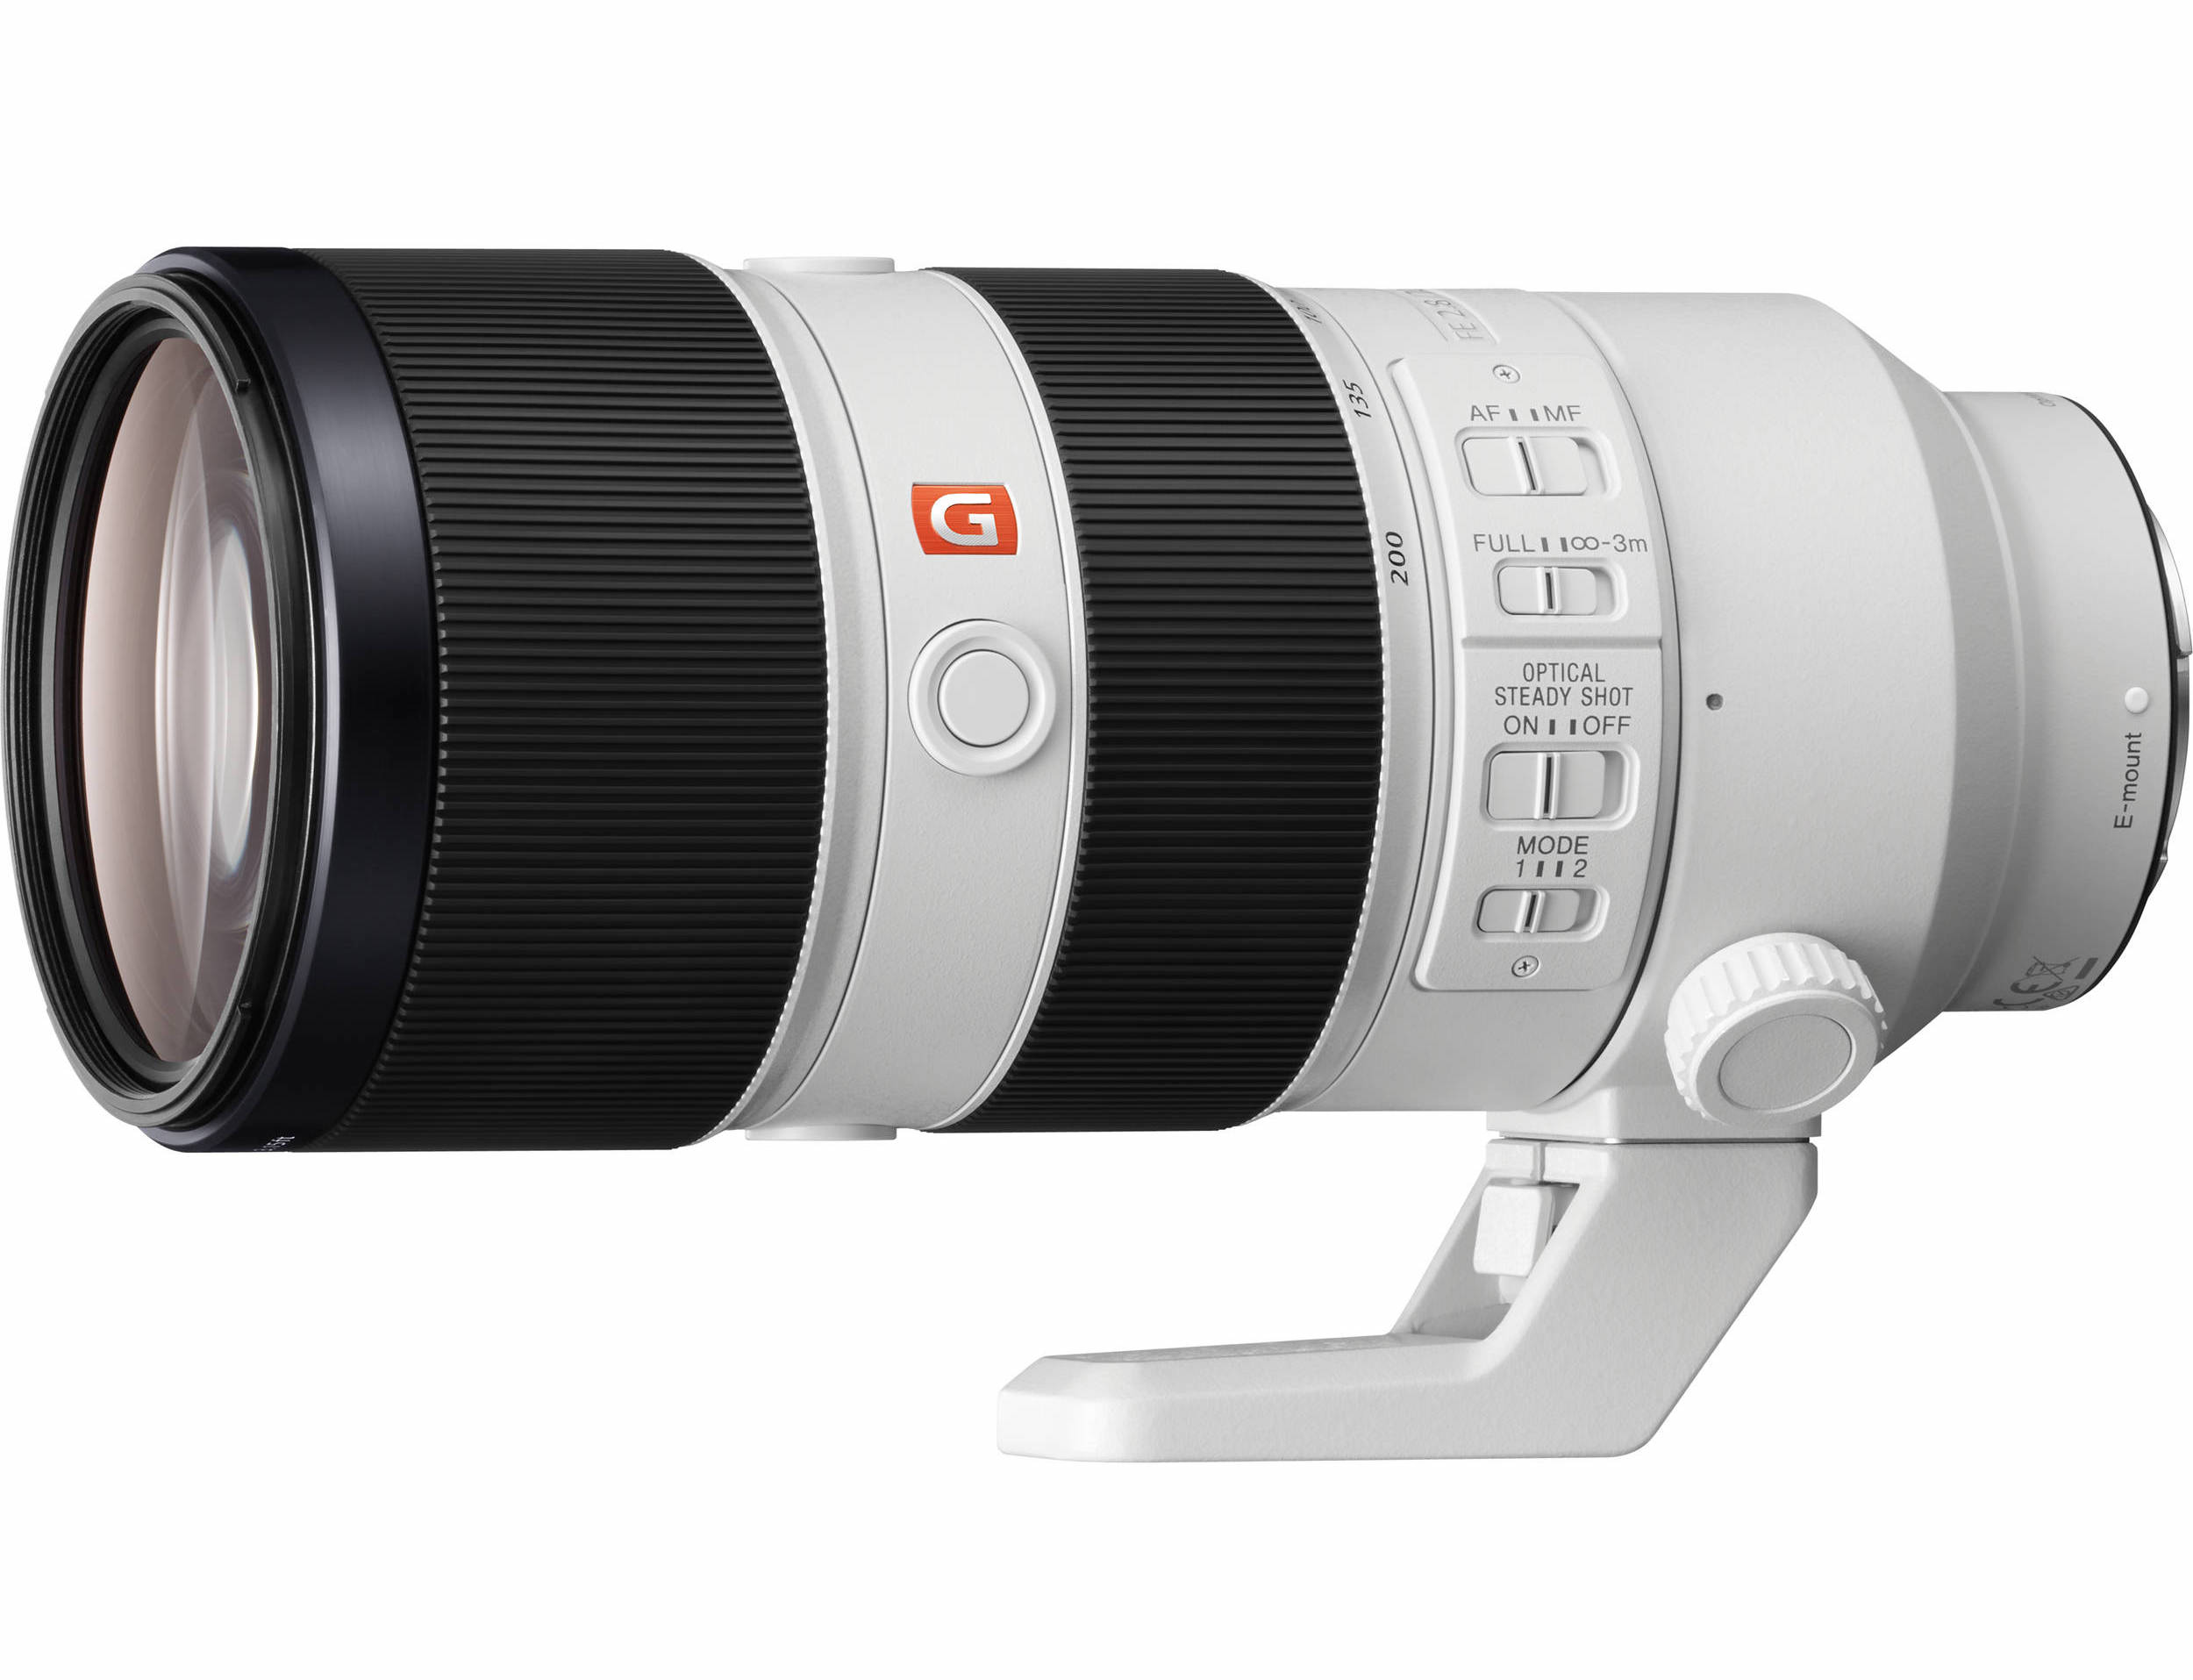 Sony FE 70-200mm f/2.8 GM OSS Lens Firmware Ver 05 Released